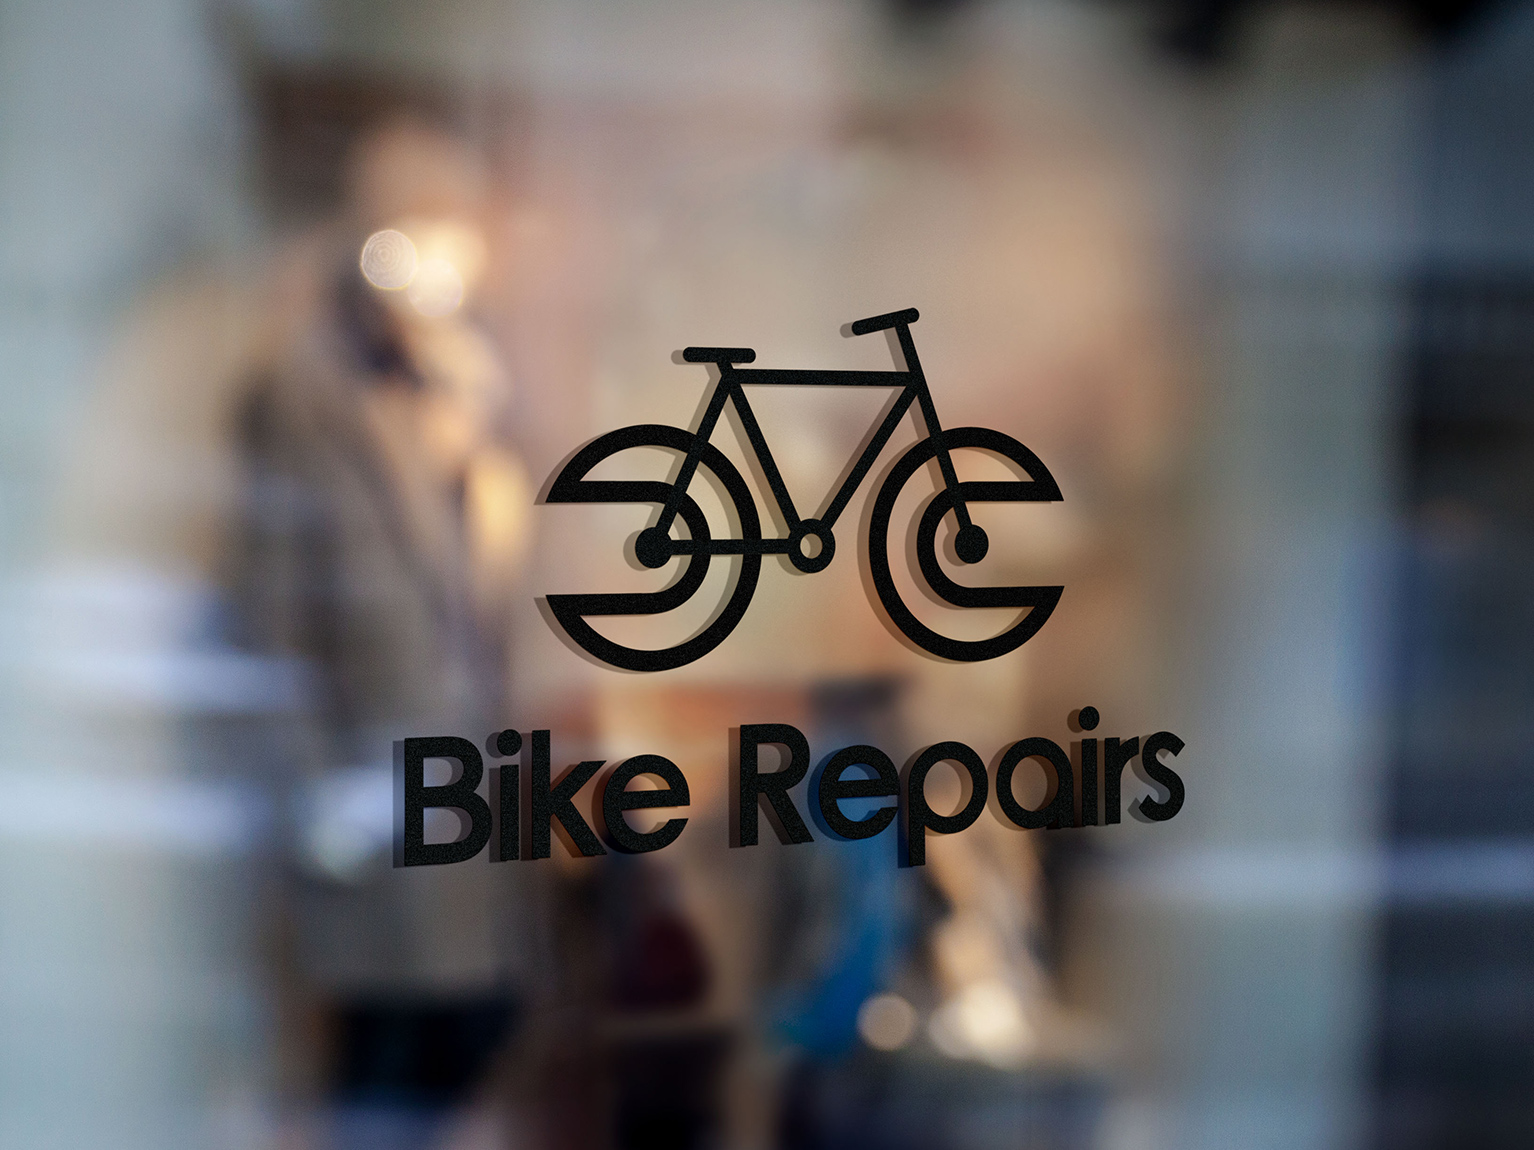 Bike repair logo